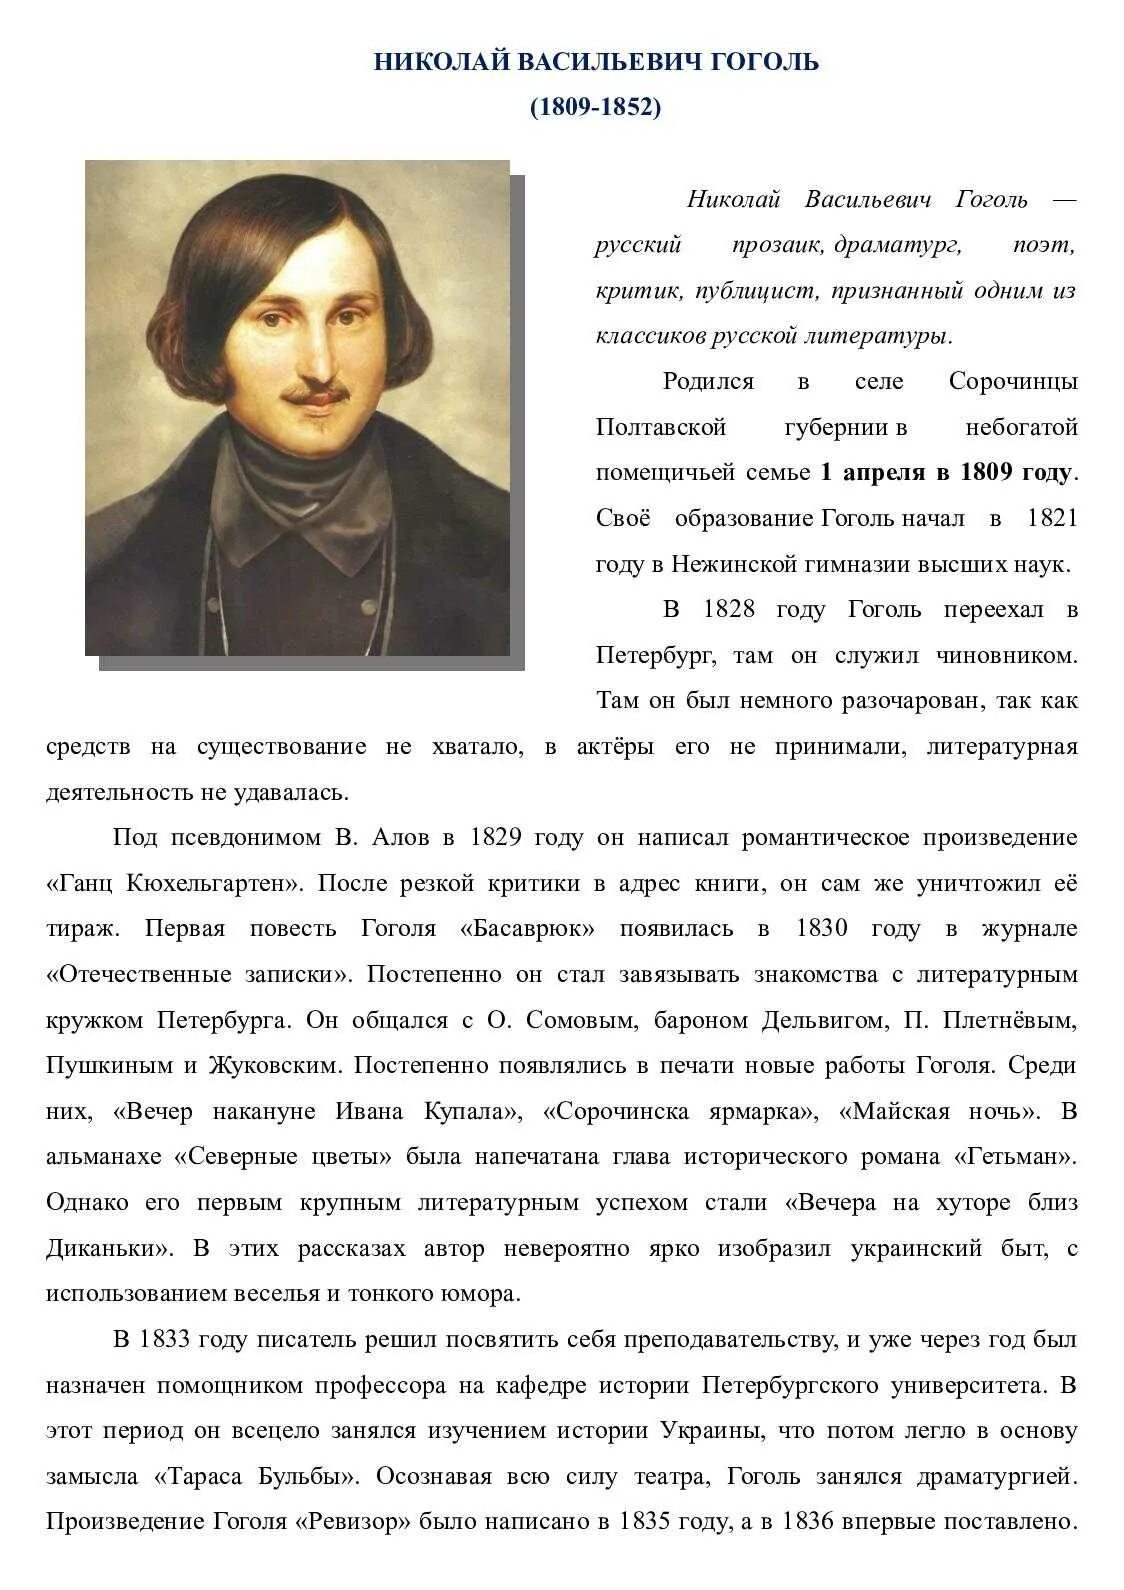 Биография Гоголя. Краткая биография Гоголя.